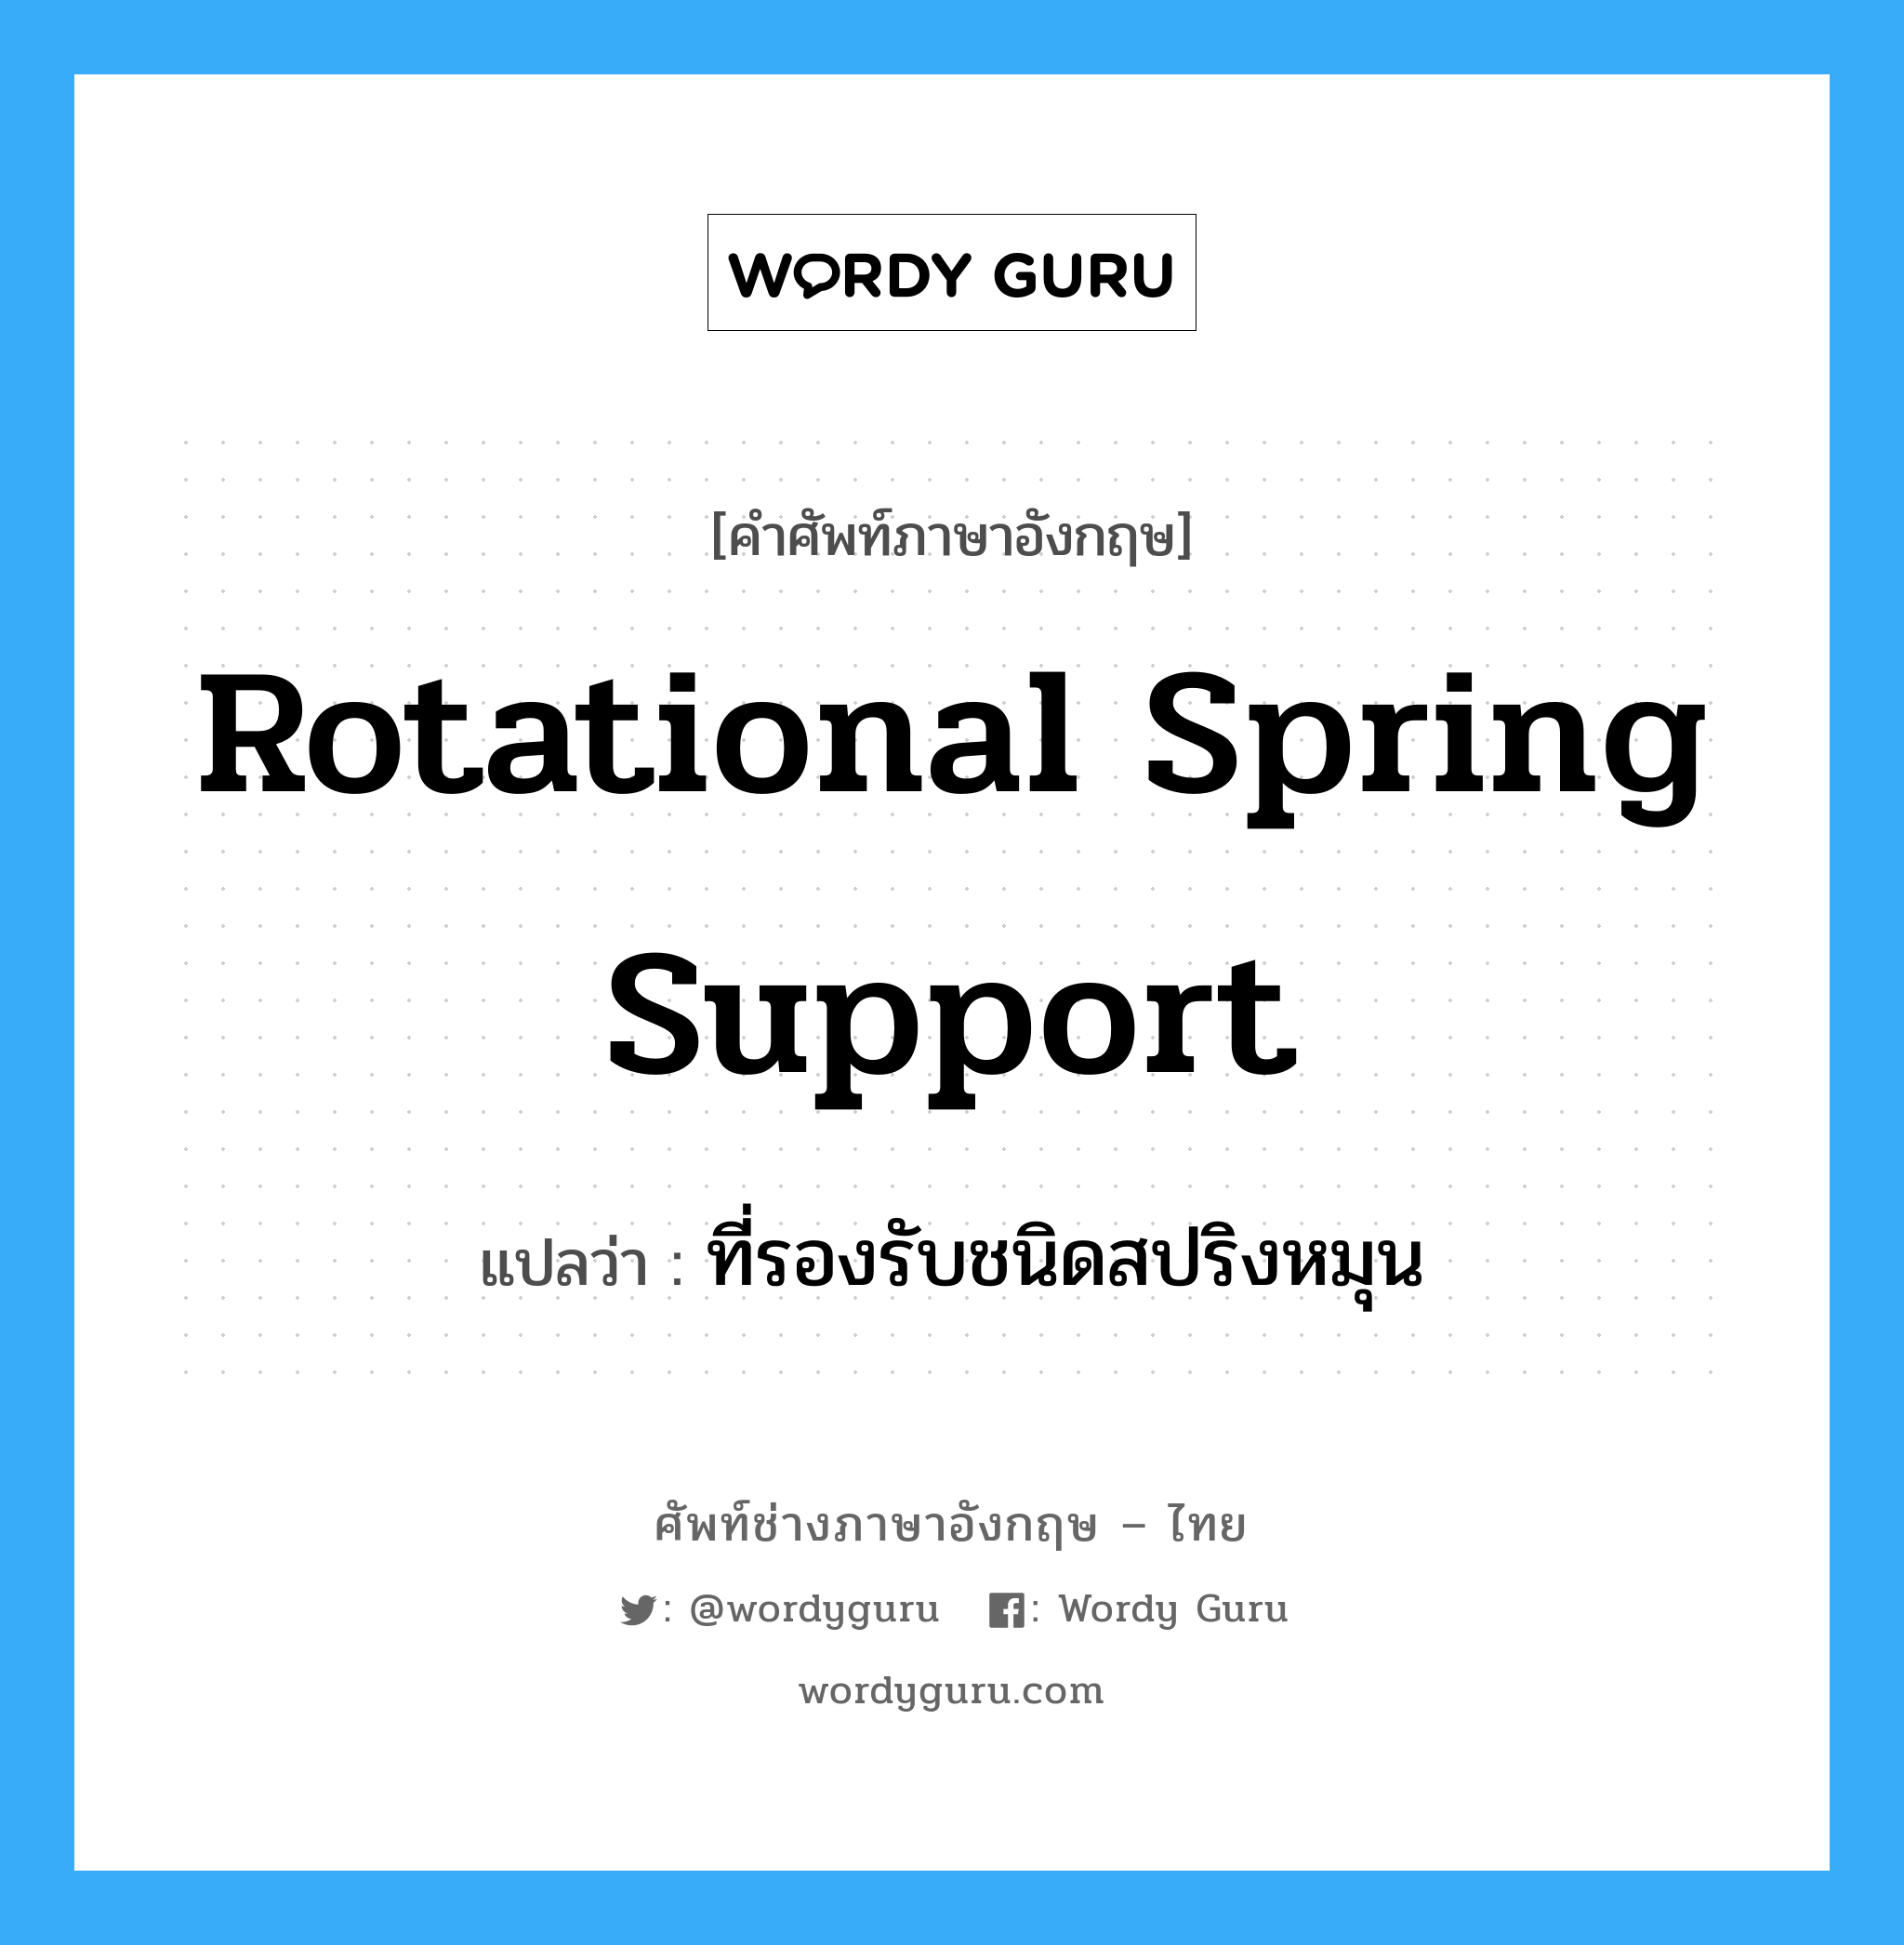 rotational spring support แปลว่า?, คำศัพท์ช่างภาษาอังกฤษ - ไทย rotational spring support คำศัพท์ภาษาอังกฤษ rotational spring support แปลว่า ที่รองรับชนิดสปริงหมุน